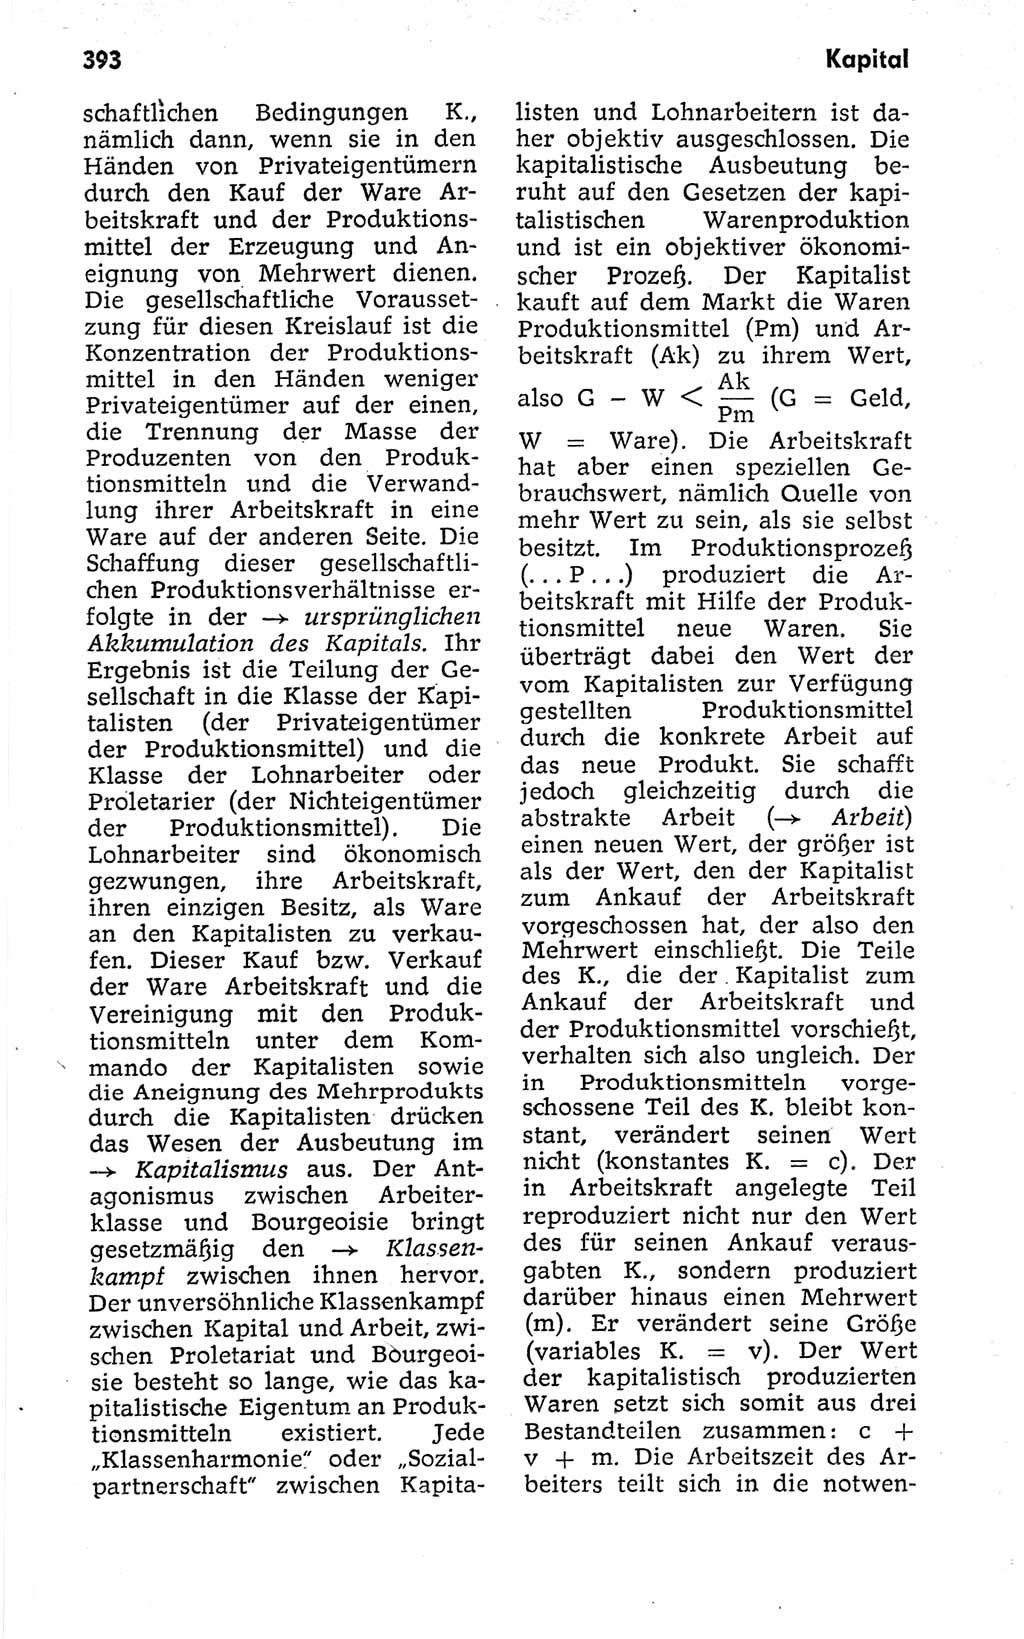 Kleines politisches Wörterbuch [Deutsche Demokratische Republik (DDR)] 1973, Seite 393 (Kl. pol. Wb. DDR 1973, S. 393)